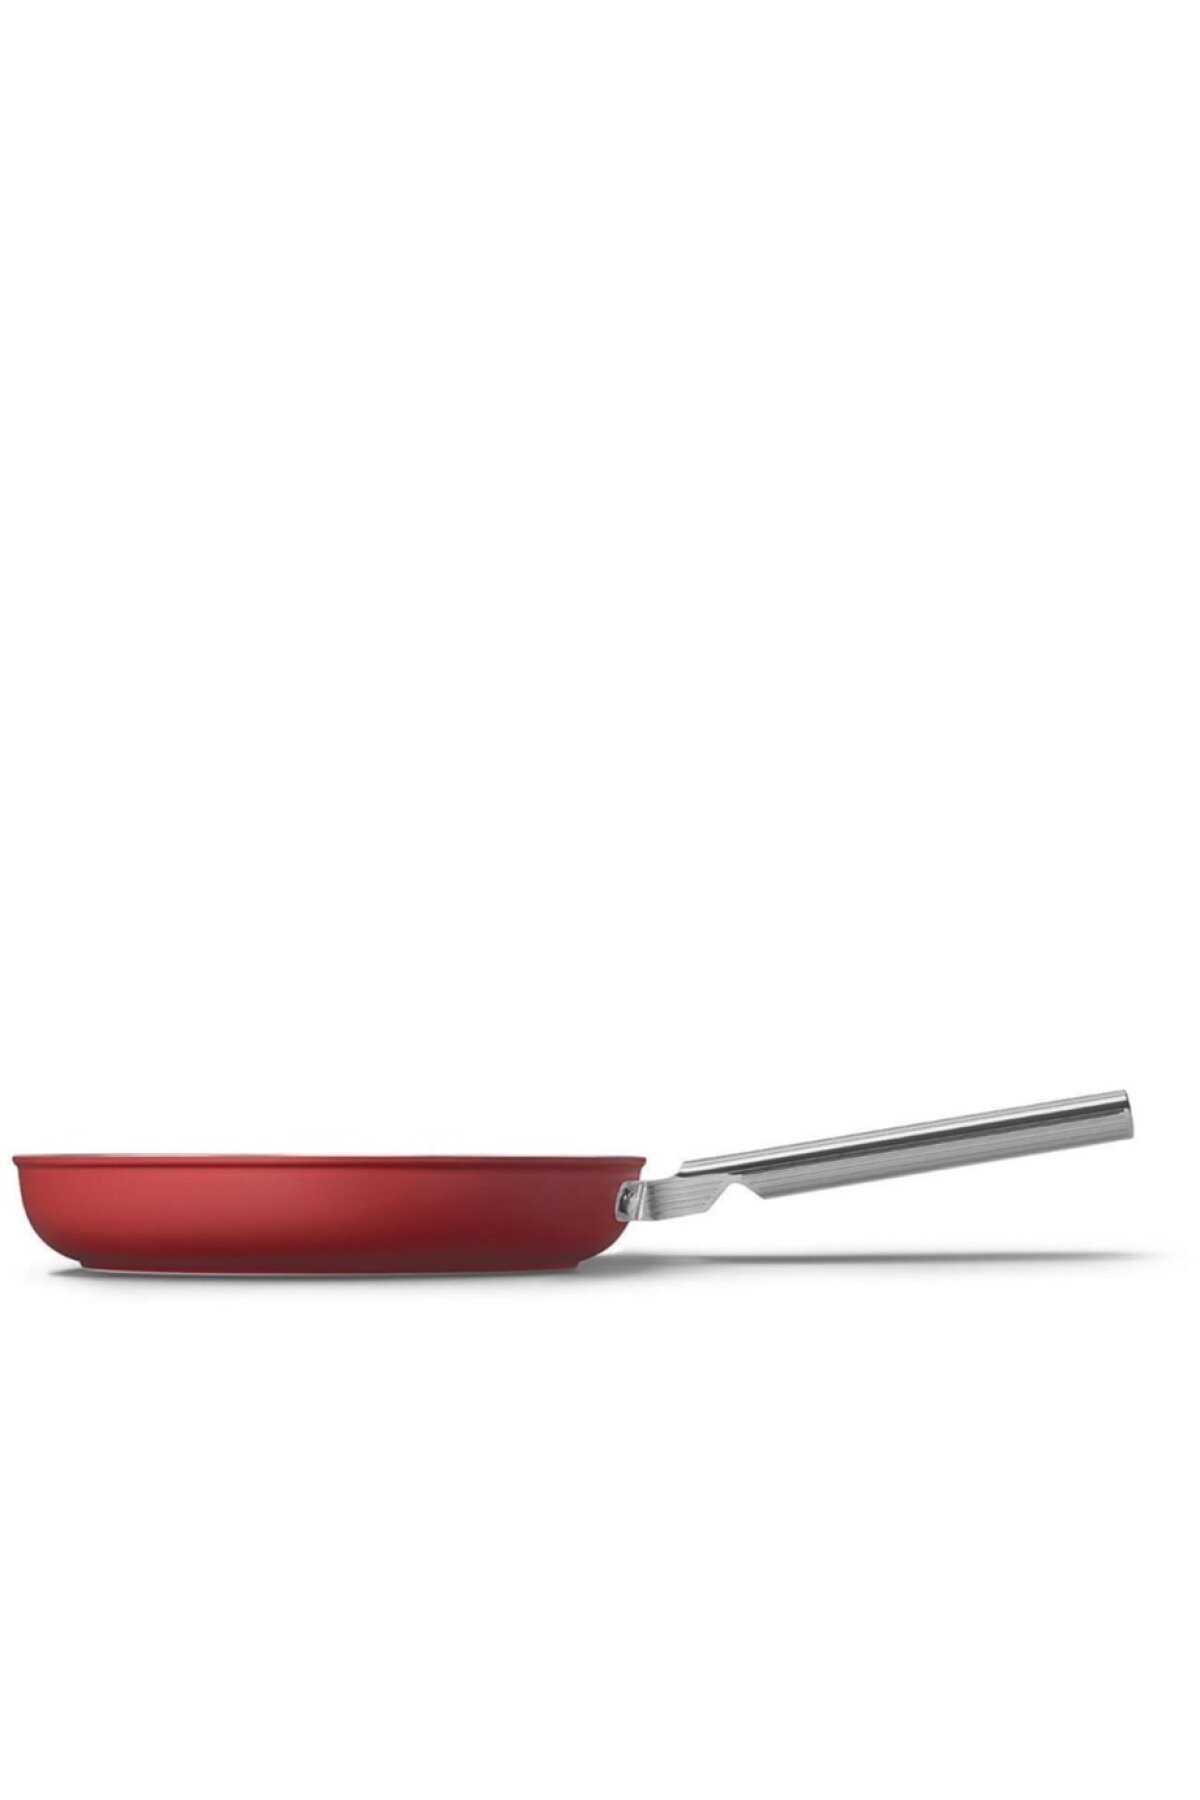 Smeg Cookware 50'S Style Kırmızı Tava 28 cm